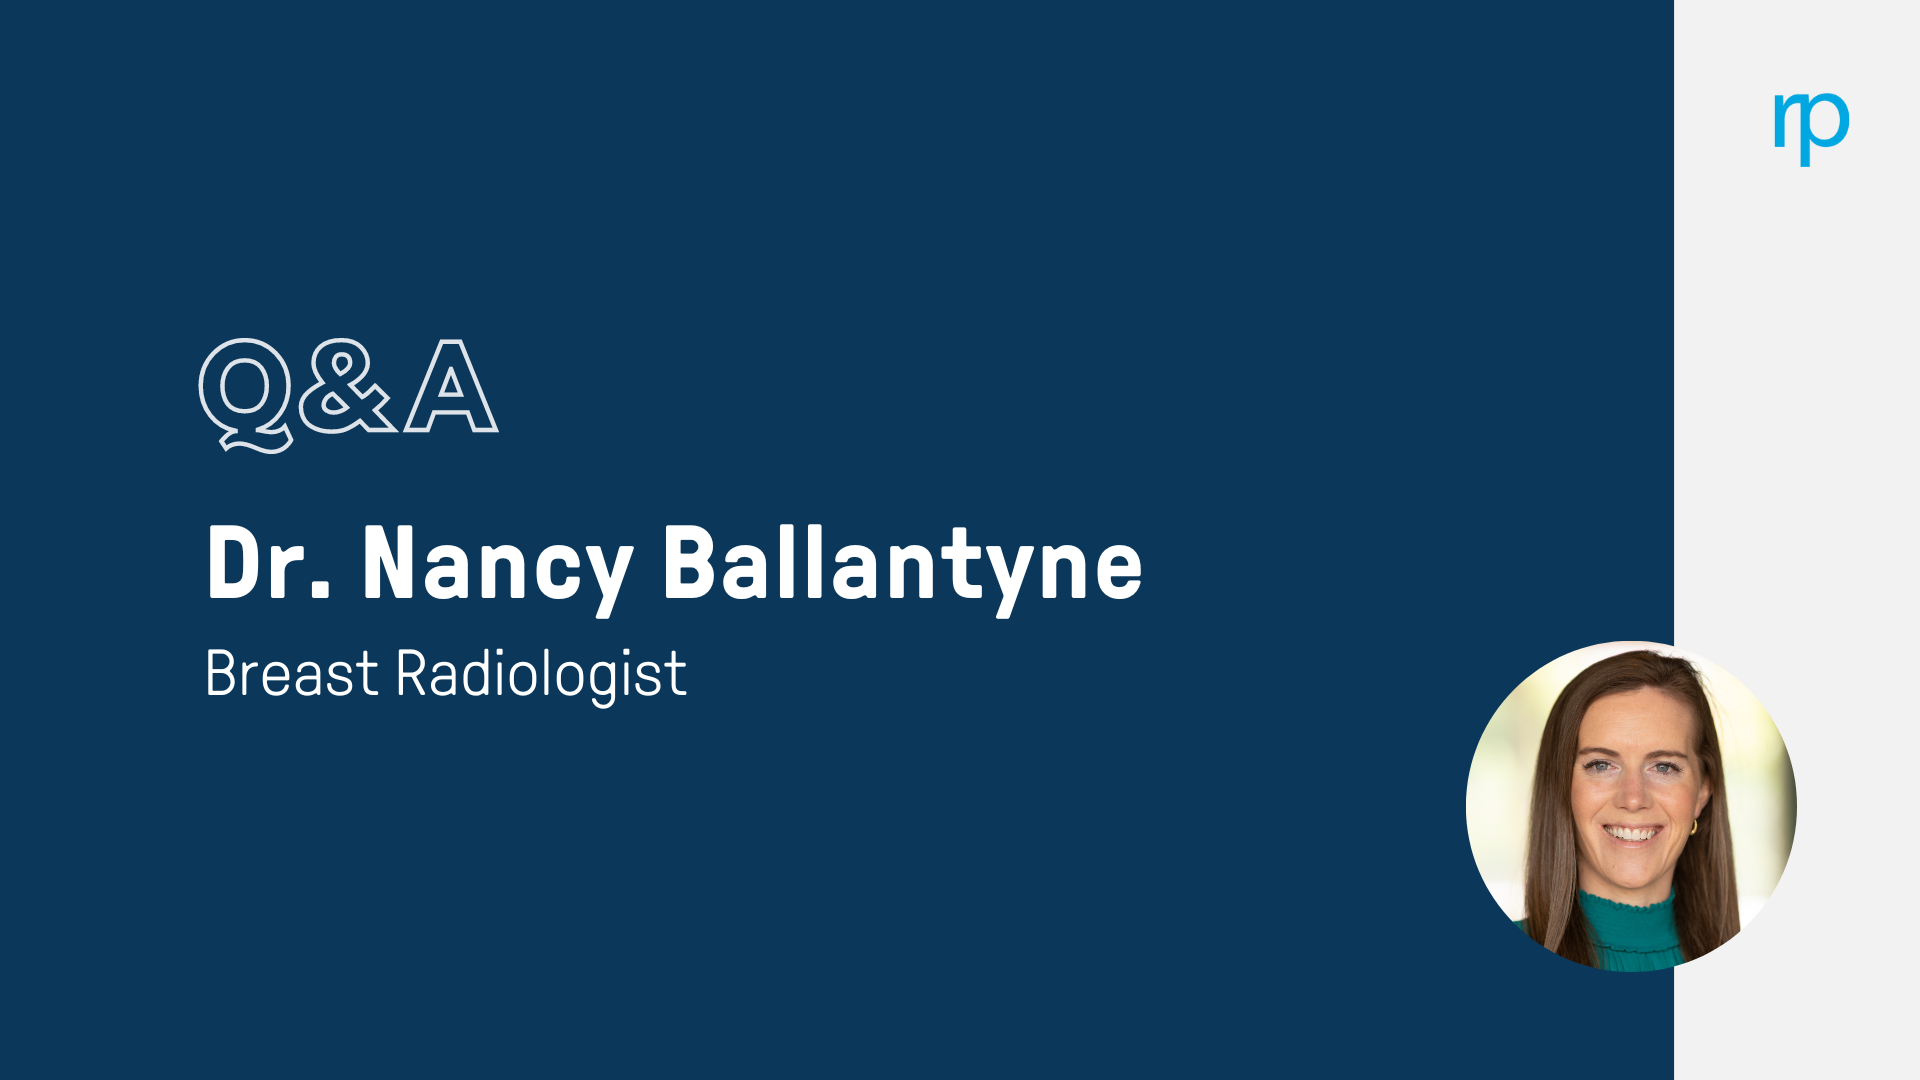 Dr. Nancy Ballantyne